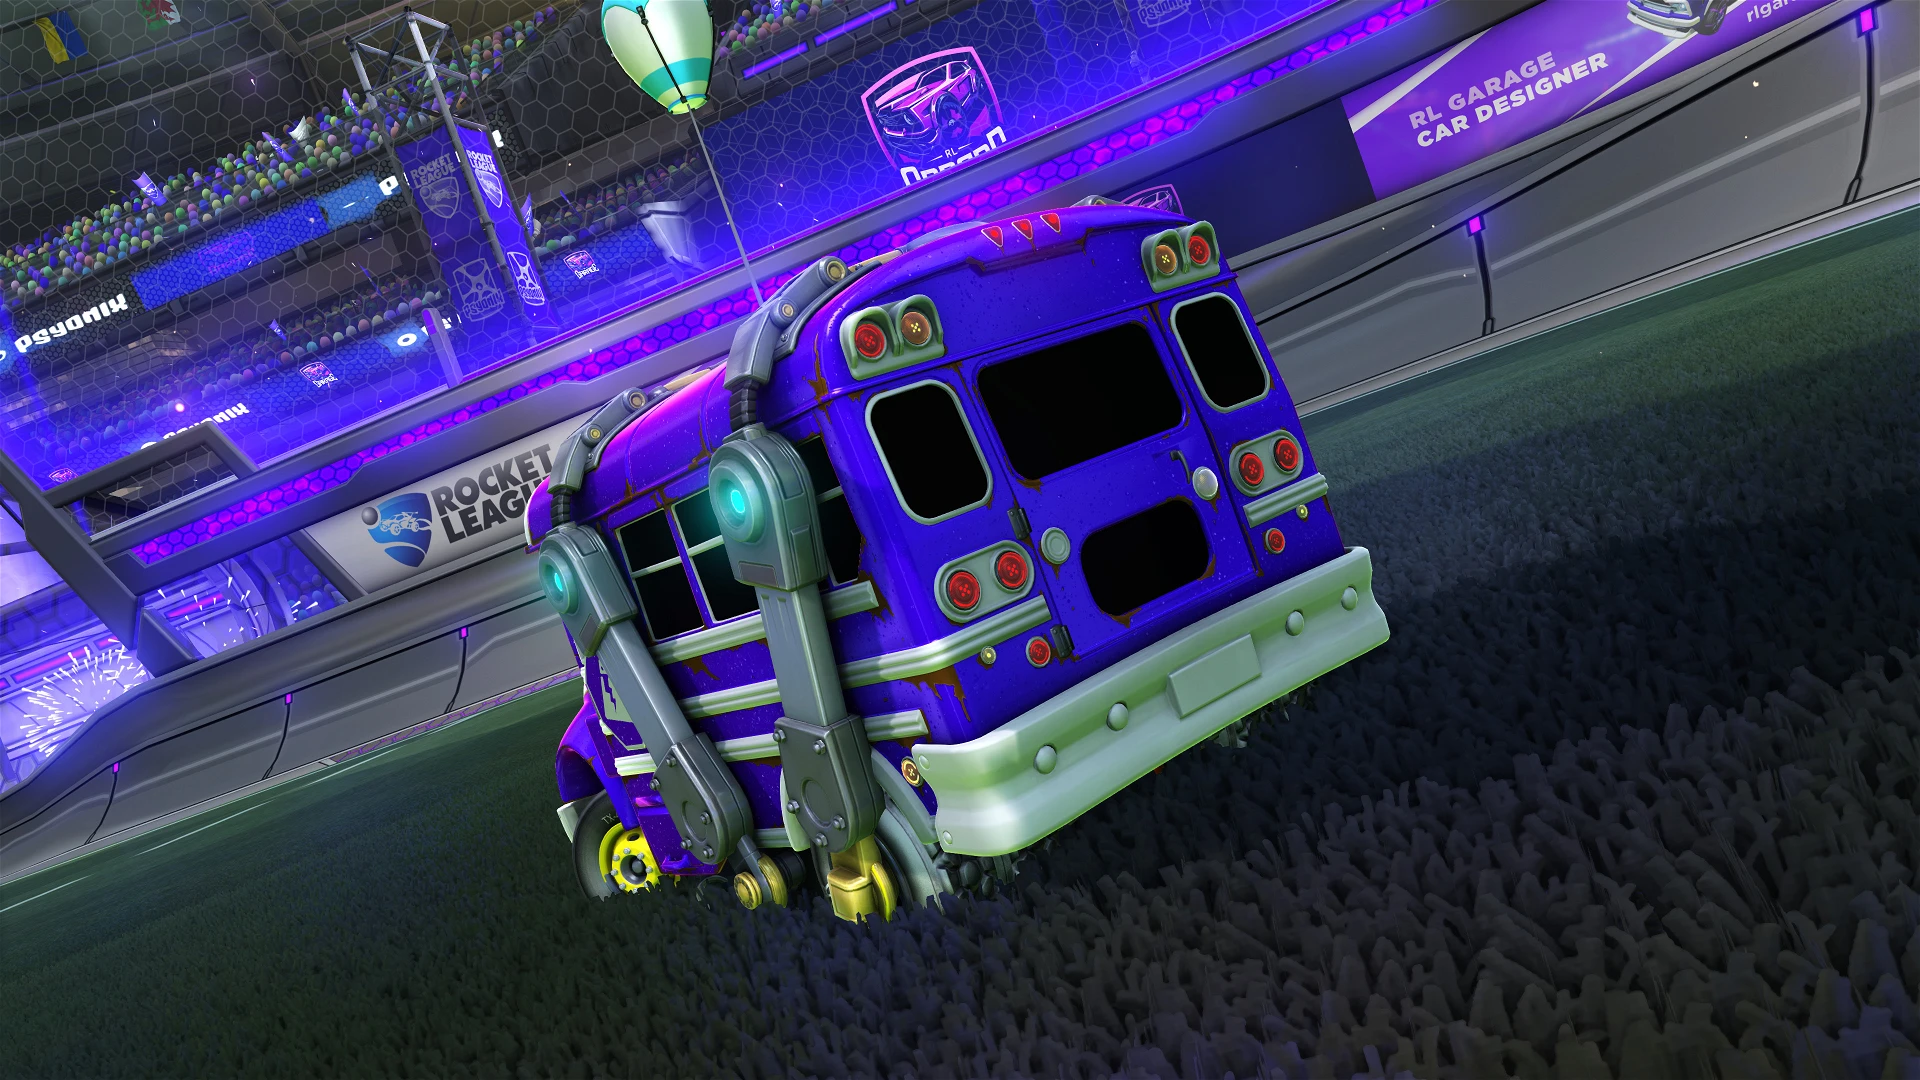 Rocket League® - Battle Bus (Titanium White) for Free - Epic Games